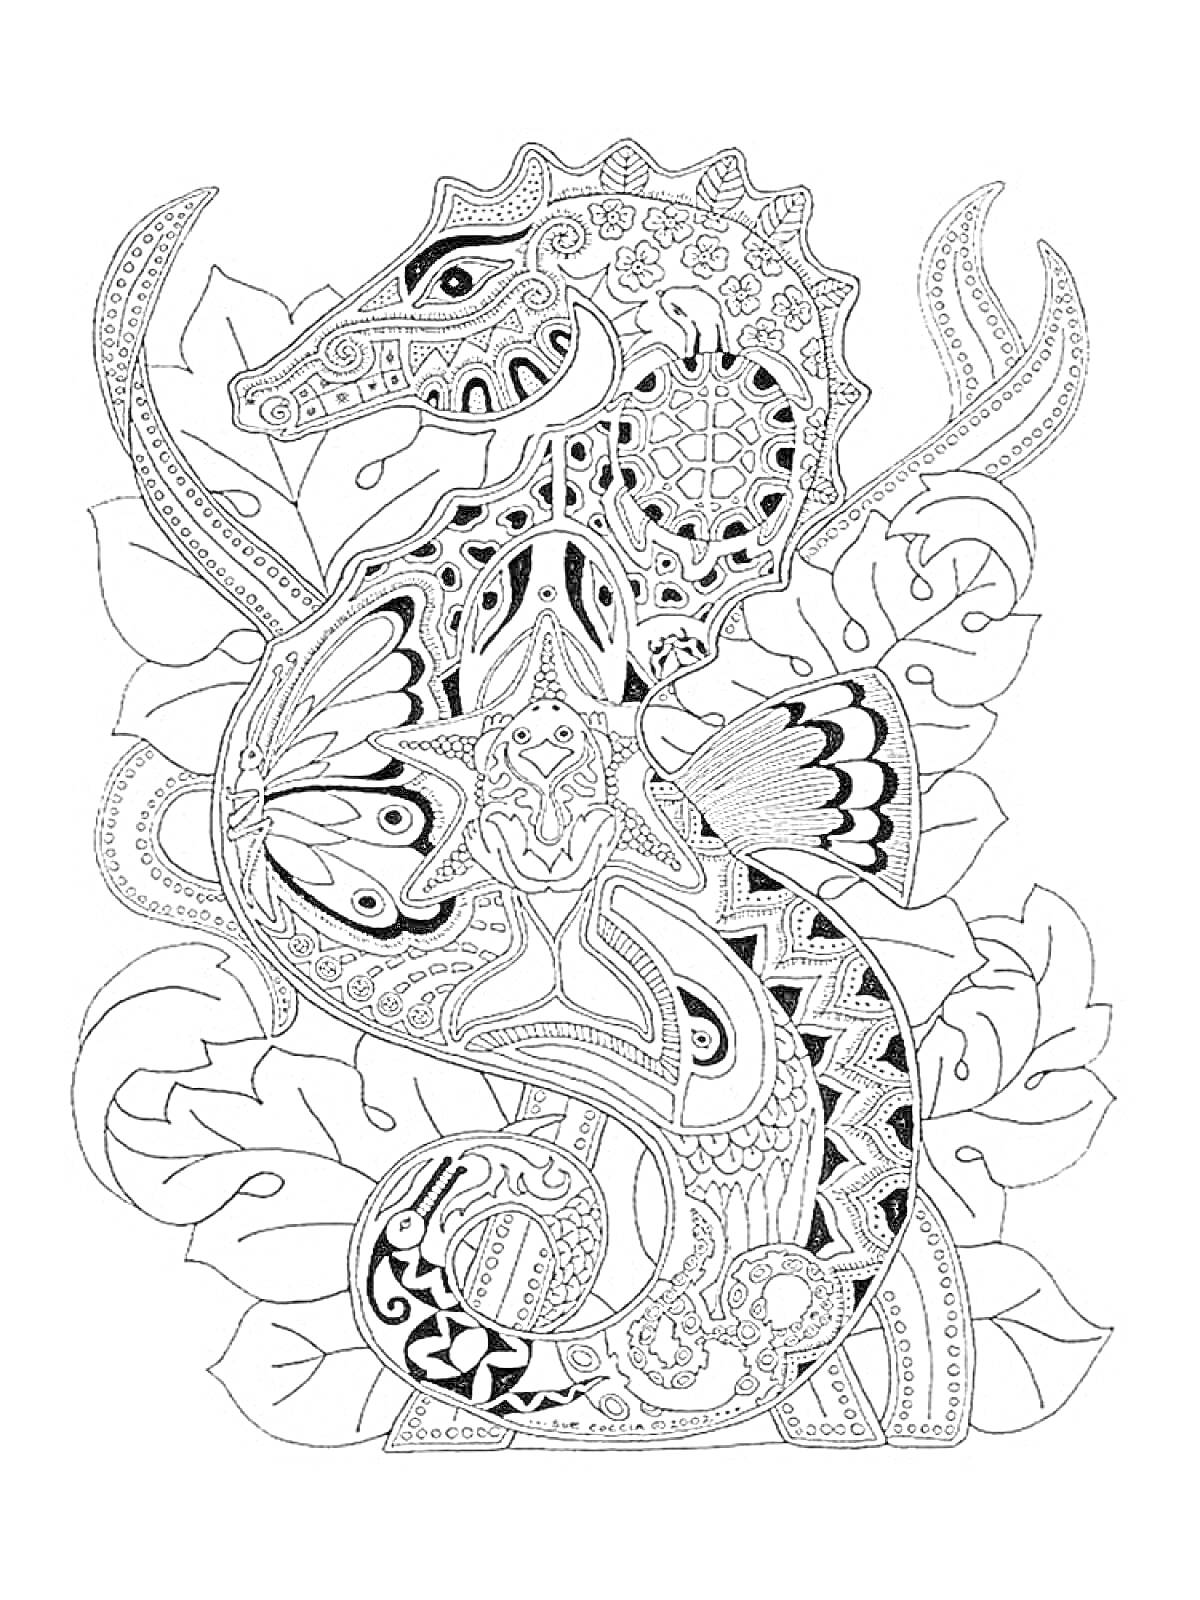 Раскраска Морской конек и декоративные элементы с листьями и бабочками